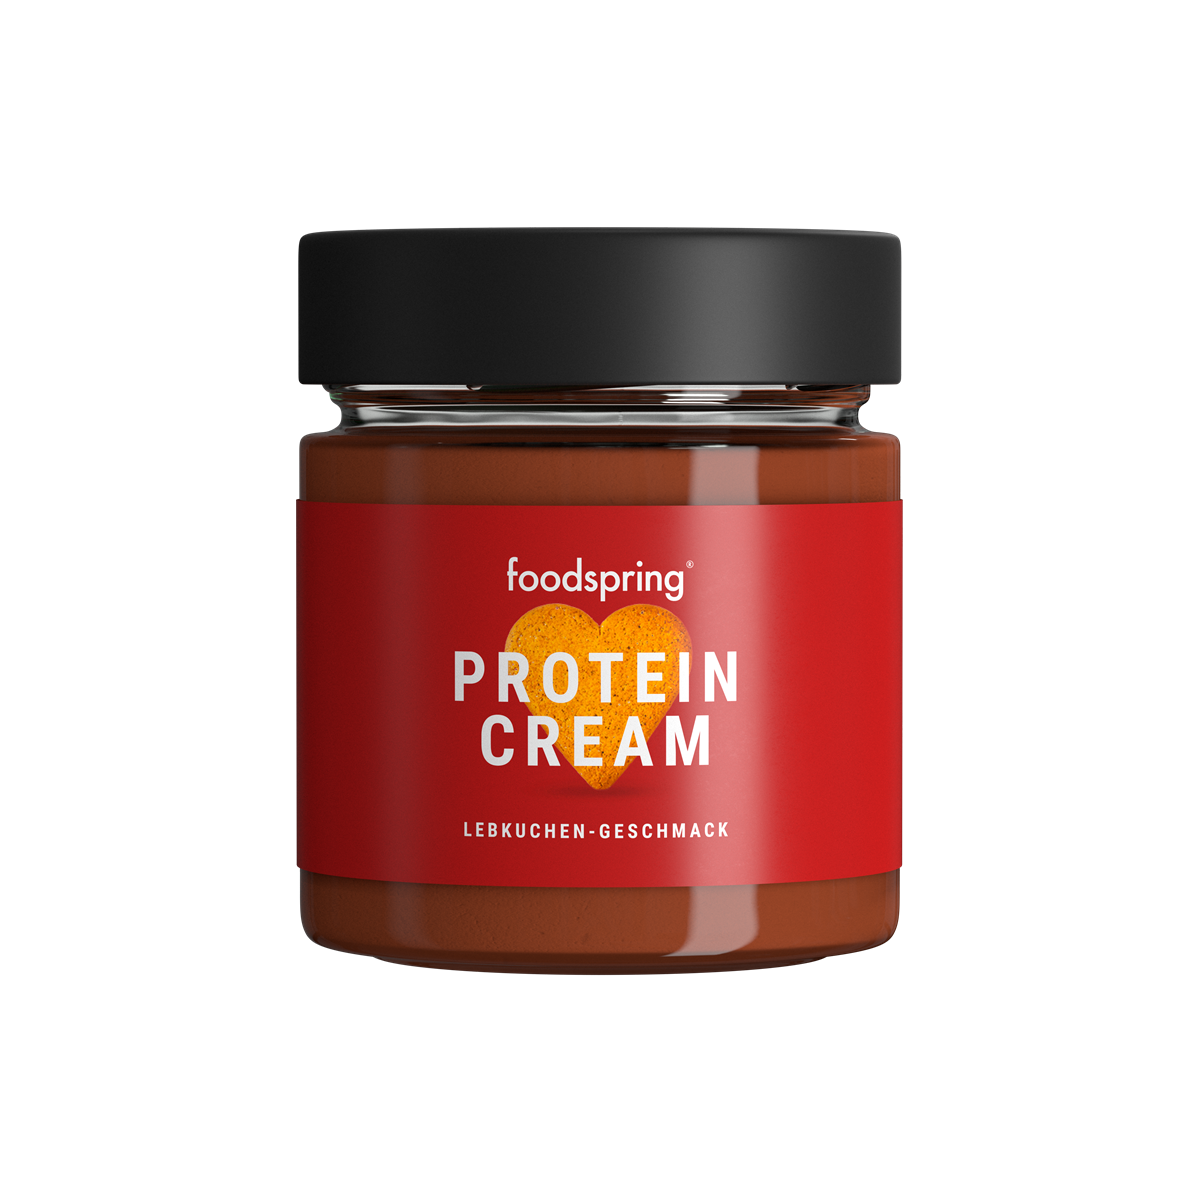 foodspring_Protein Cream_Lebkuchen_EUR 4,99